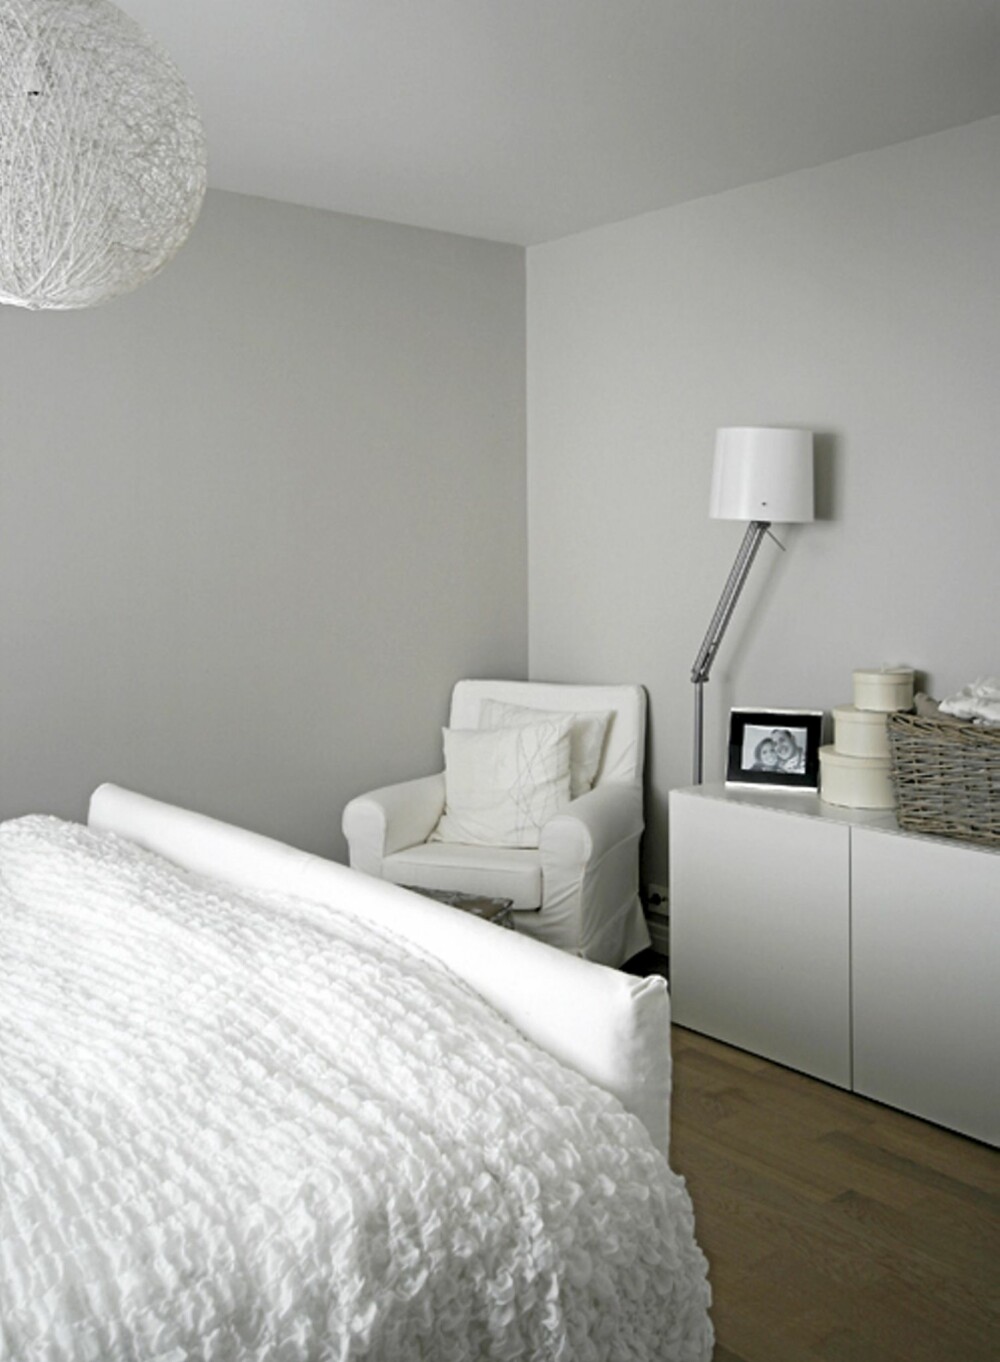 SOVEROM: Soverommet er lyst og åpent med hvitt som en gjennomgående farge